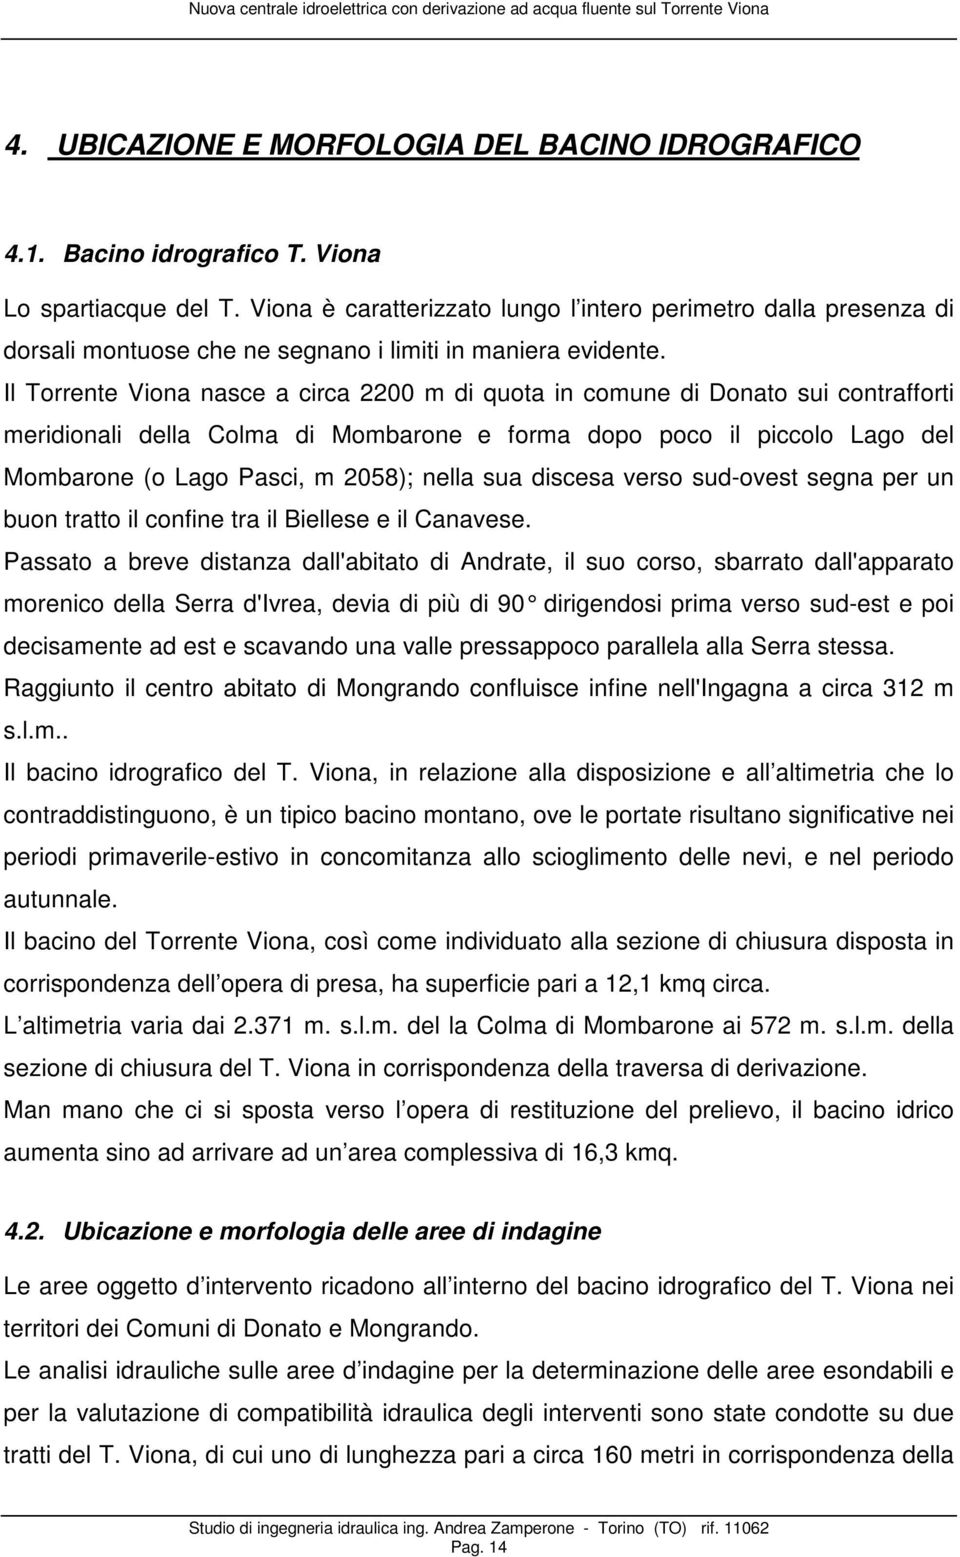 Il Torrente Viona nasce a circa 2200 m di quota in comune di Donato sui contrafforti meridionali della Colma di Mombarone e forma dopo poco il piccolo Lago del Mombarone (o Lago Pasci, m 2058); nella